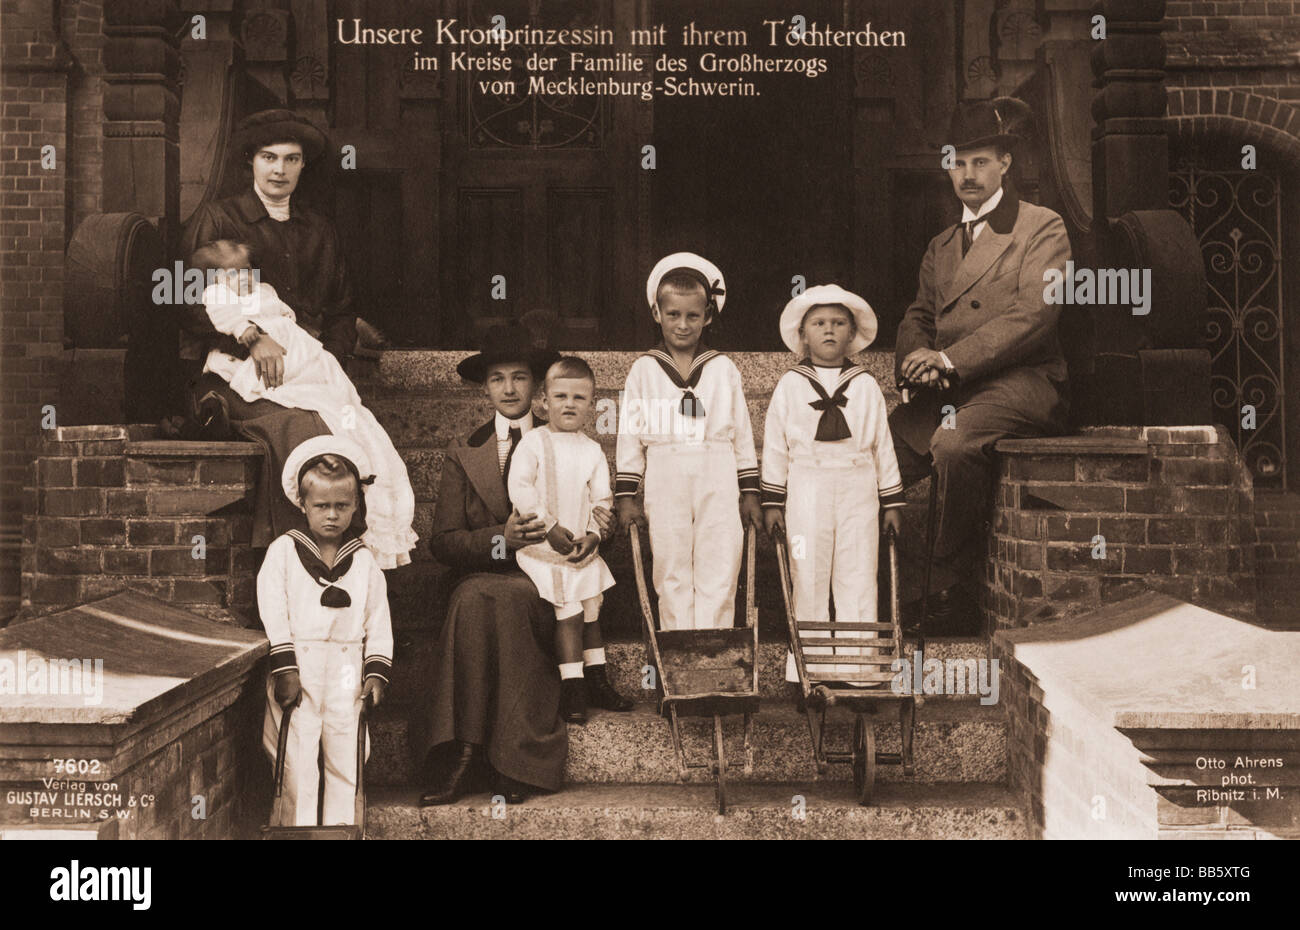 Frederick Francis IV, 9.4.1882 - 17.11.1945, Granduca di Meclemburgo-Schwerin 10.4.1897 - 13.11.1918, con famiglia, cartolina, otto Ahrens, Ribnitz, 1915, , Foto Stock